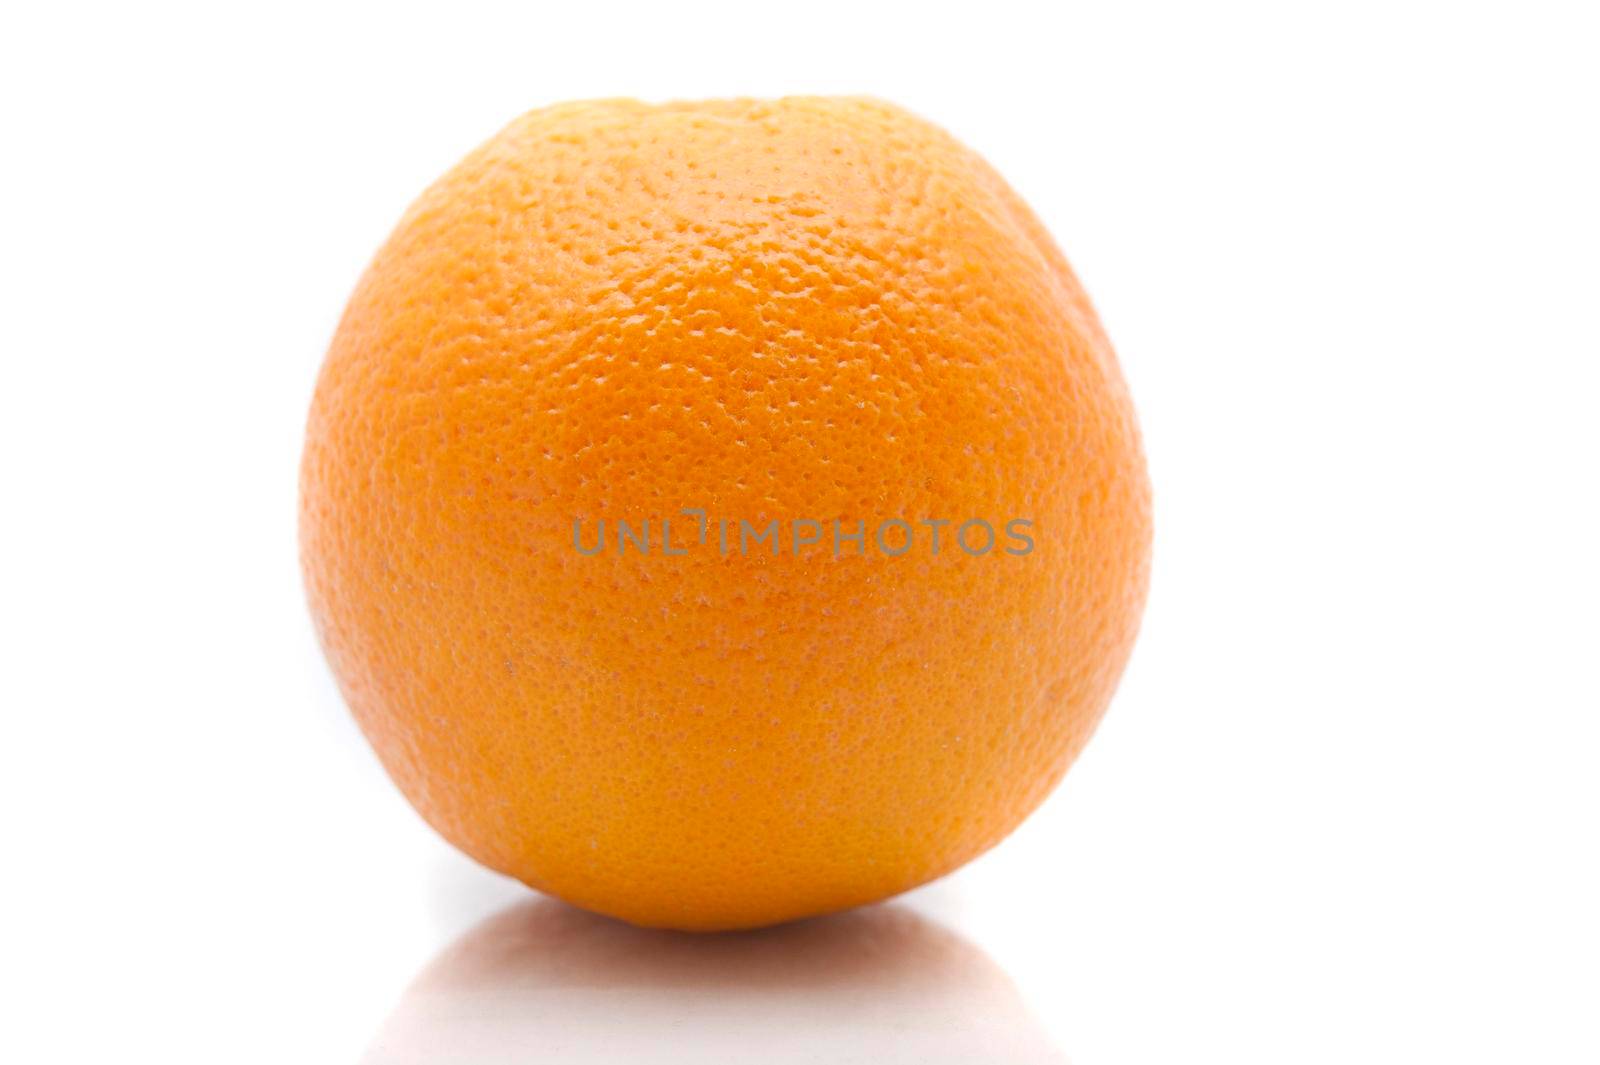 One whole fresh orange by sanisra